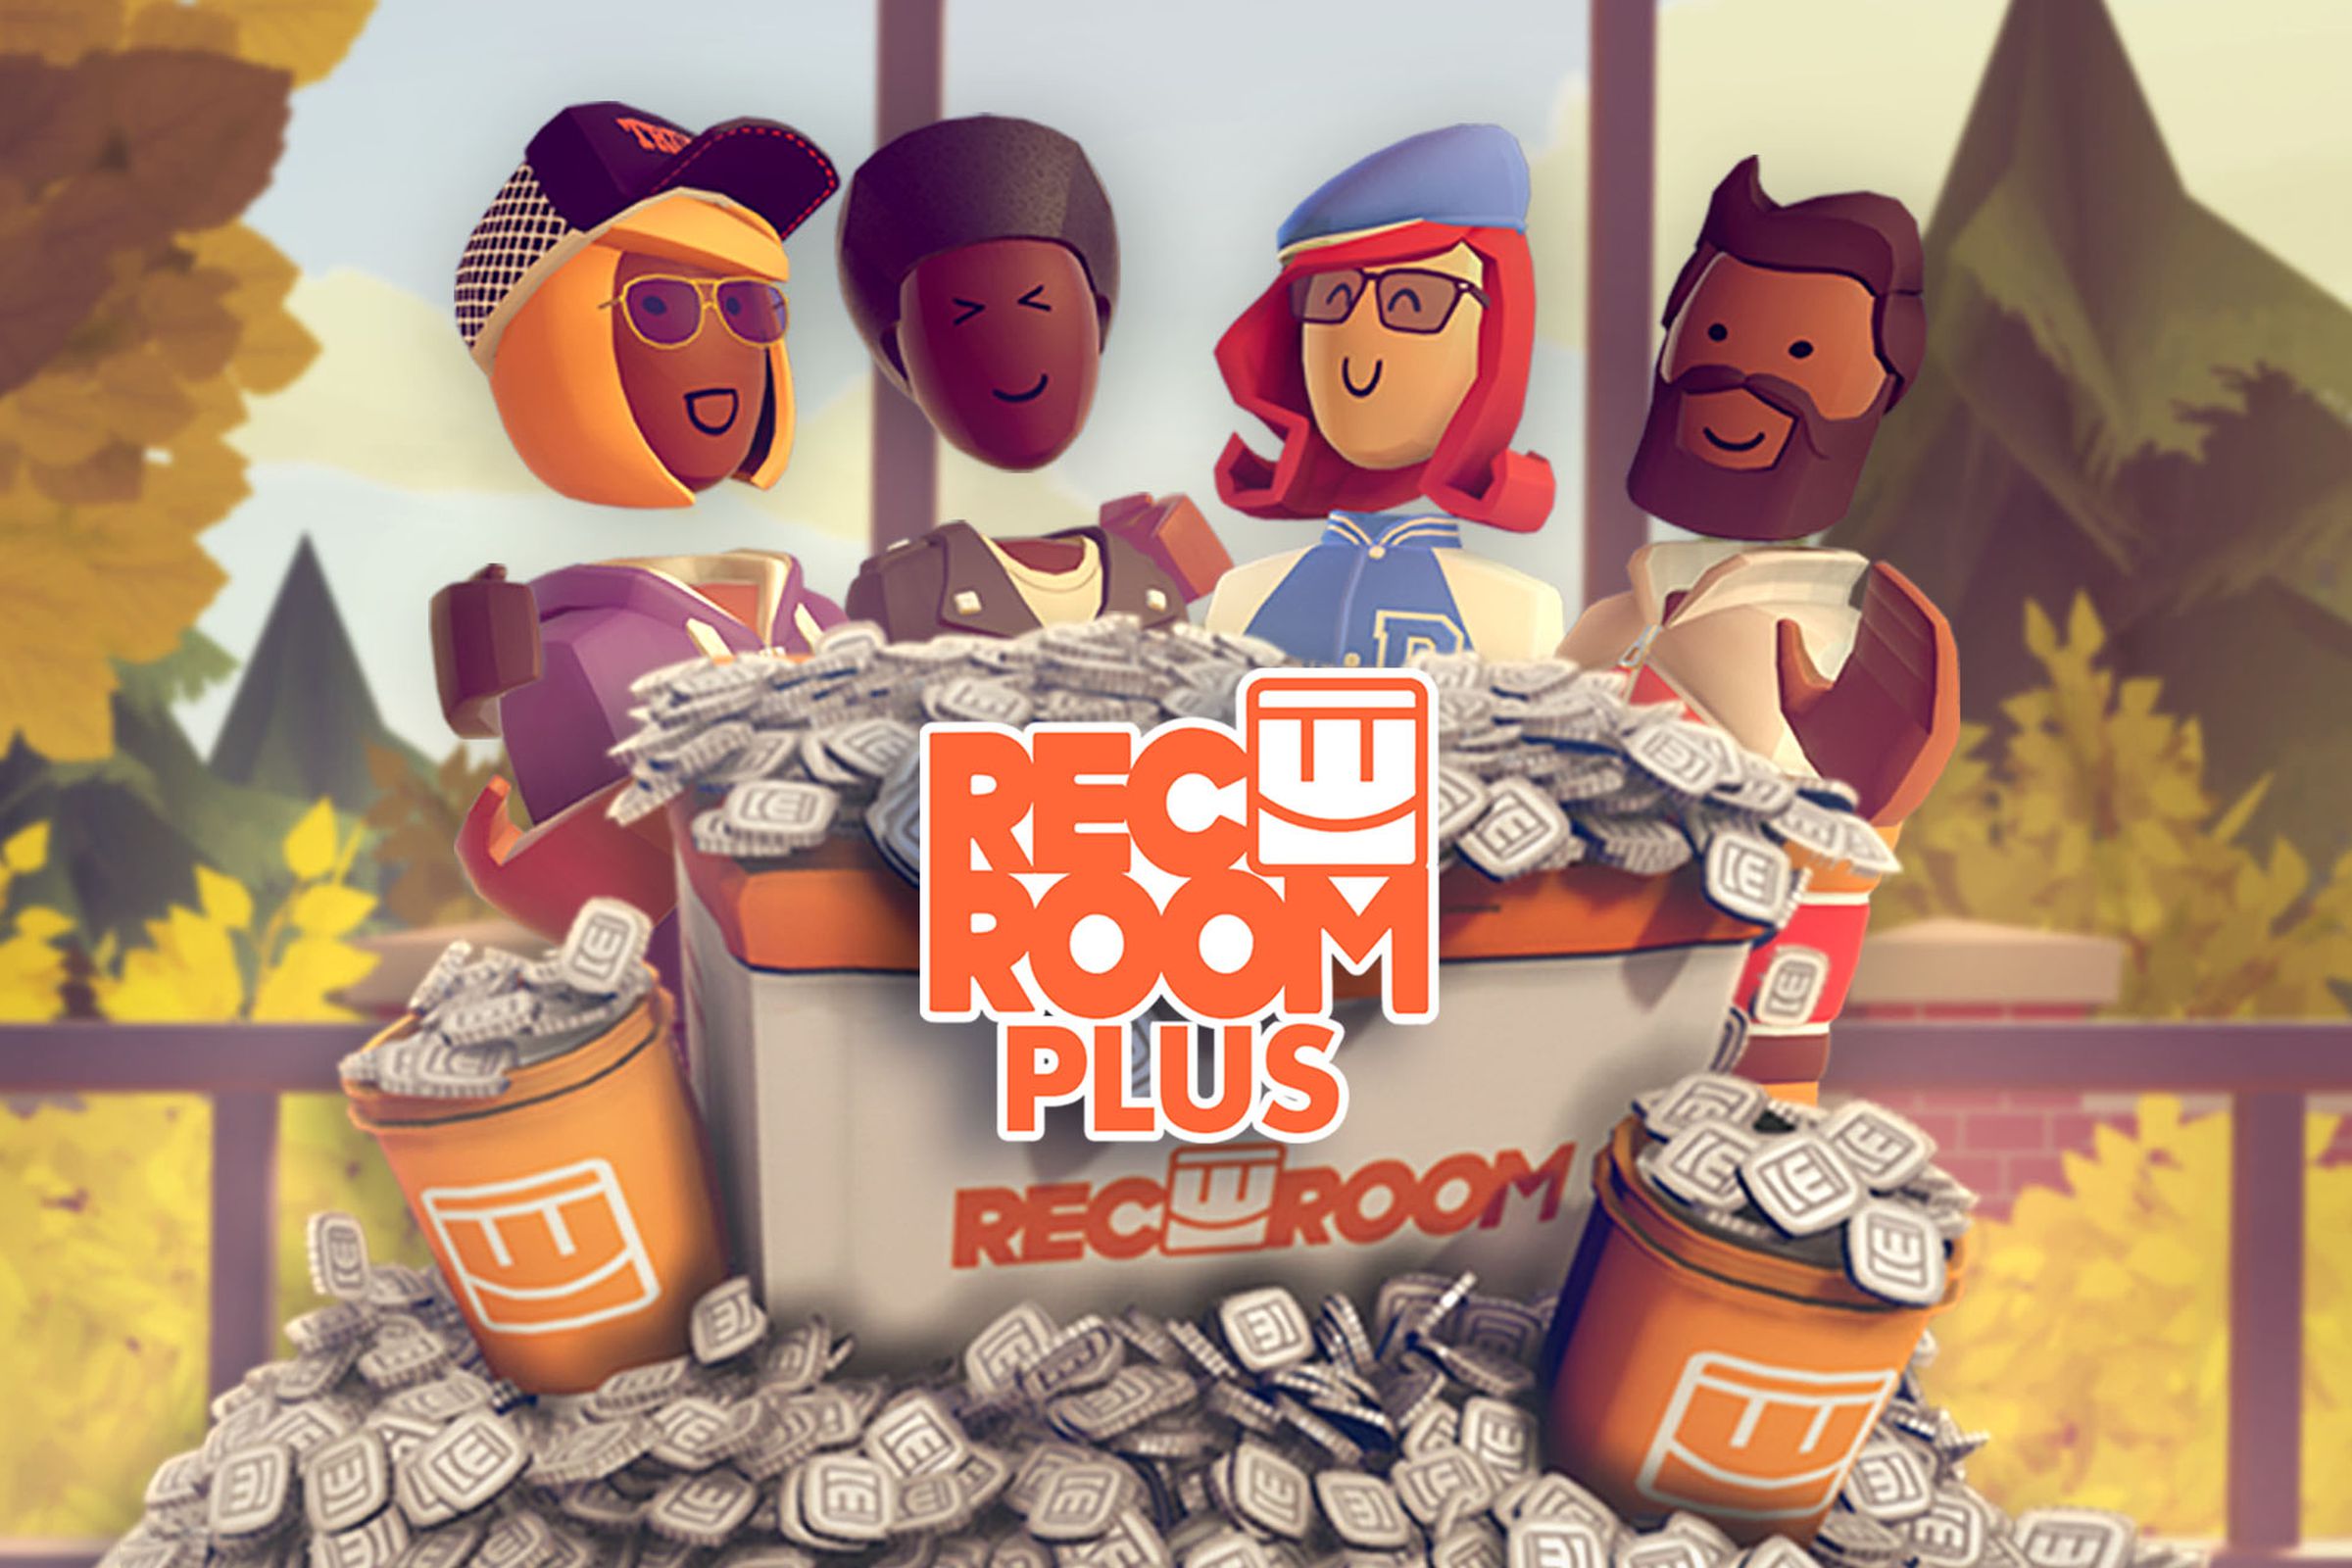 Rec Room Plus